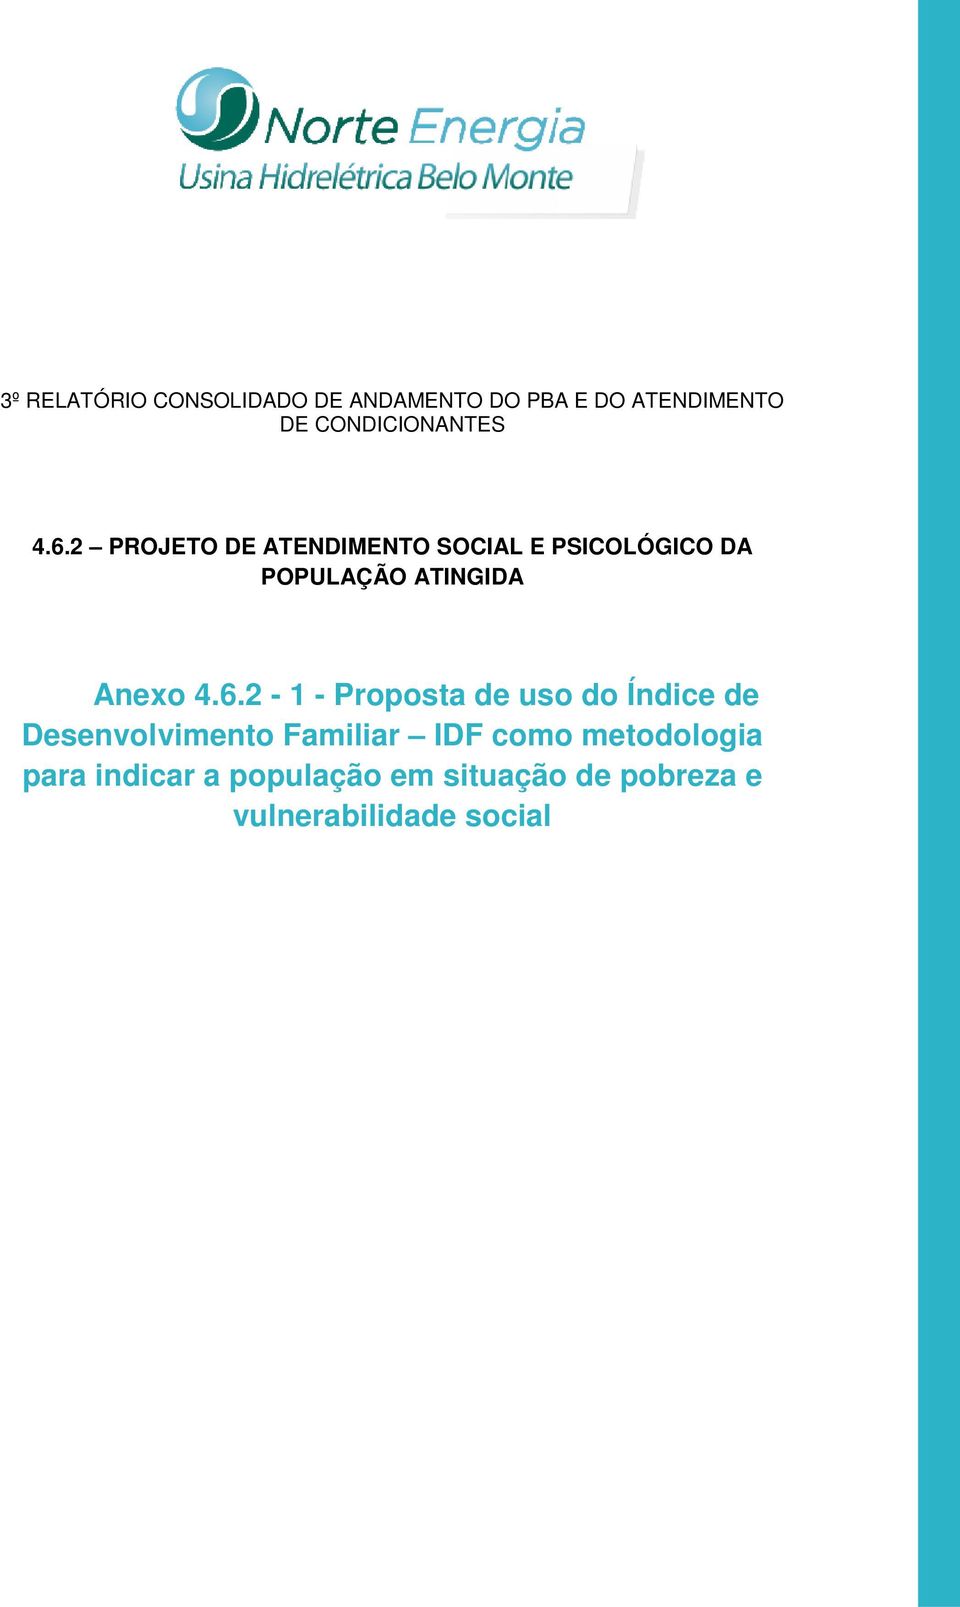 2 PROJETO DE ATENDIMENTO SOCIAL E PSICOLÓGICO DA POPULAÇÃO ATINGIDA Anexo 4.6.